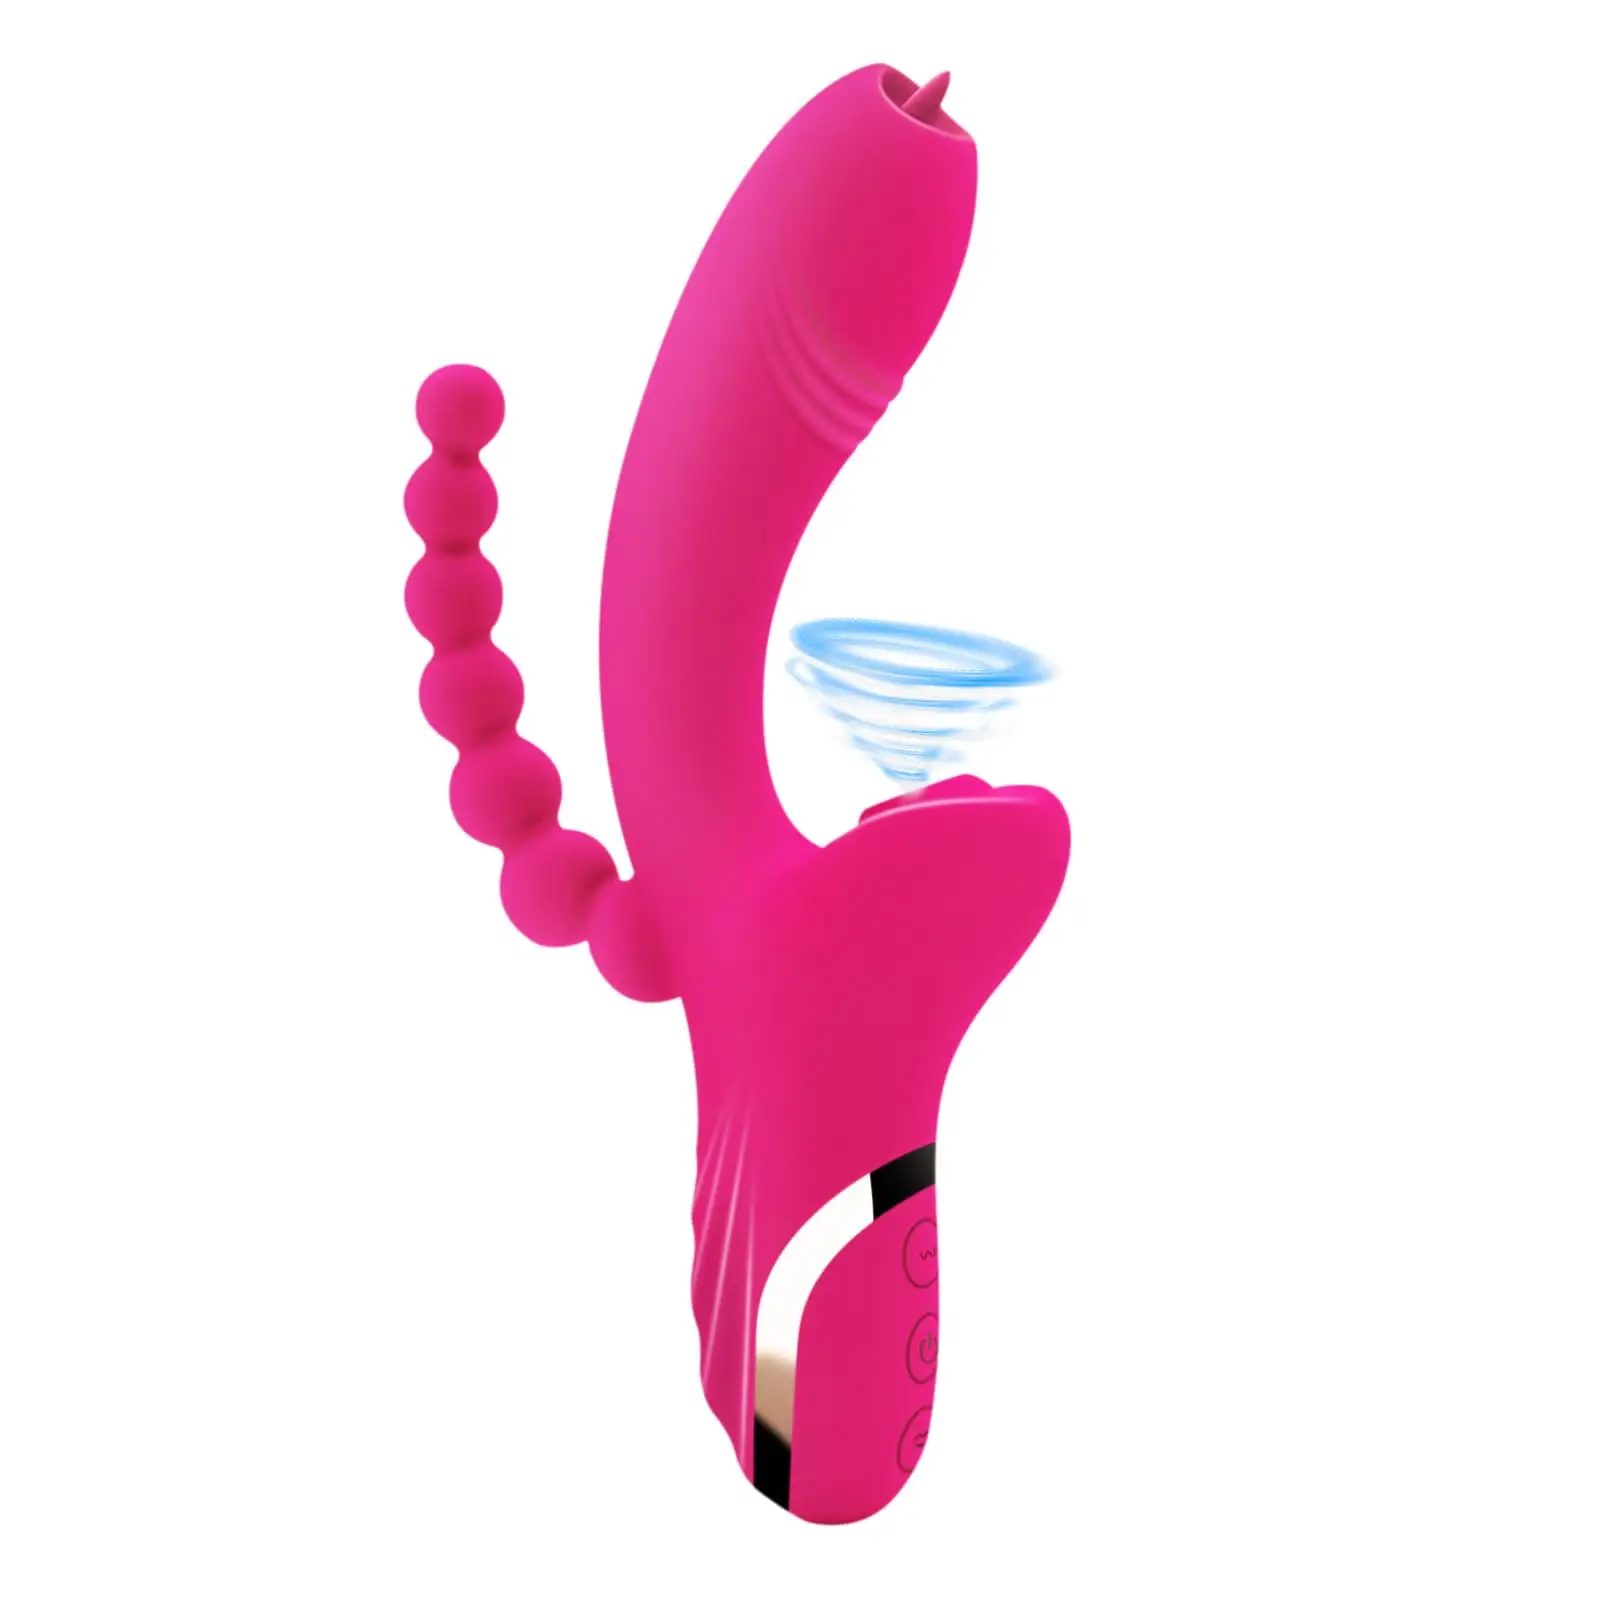 IUOUI 3 In 1 klitoral emme vibratör G Spot klitoris stimülatörü kadınlar için vakum yapay penis vibratör seks oyuncakları kadın için